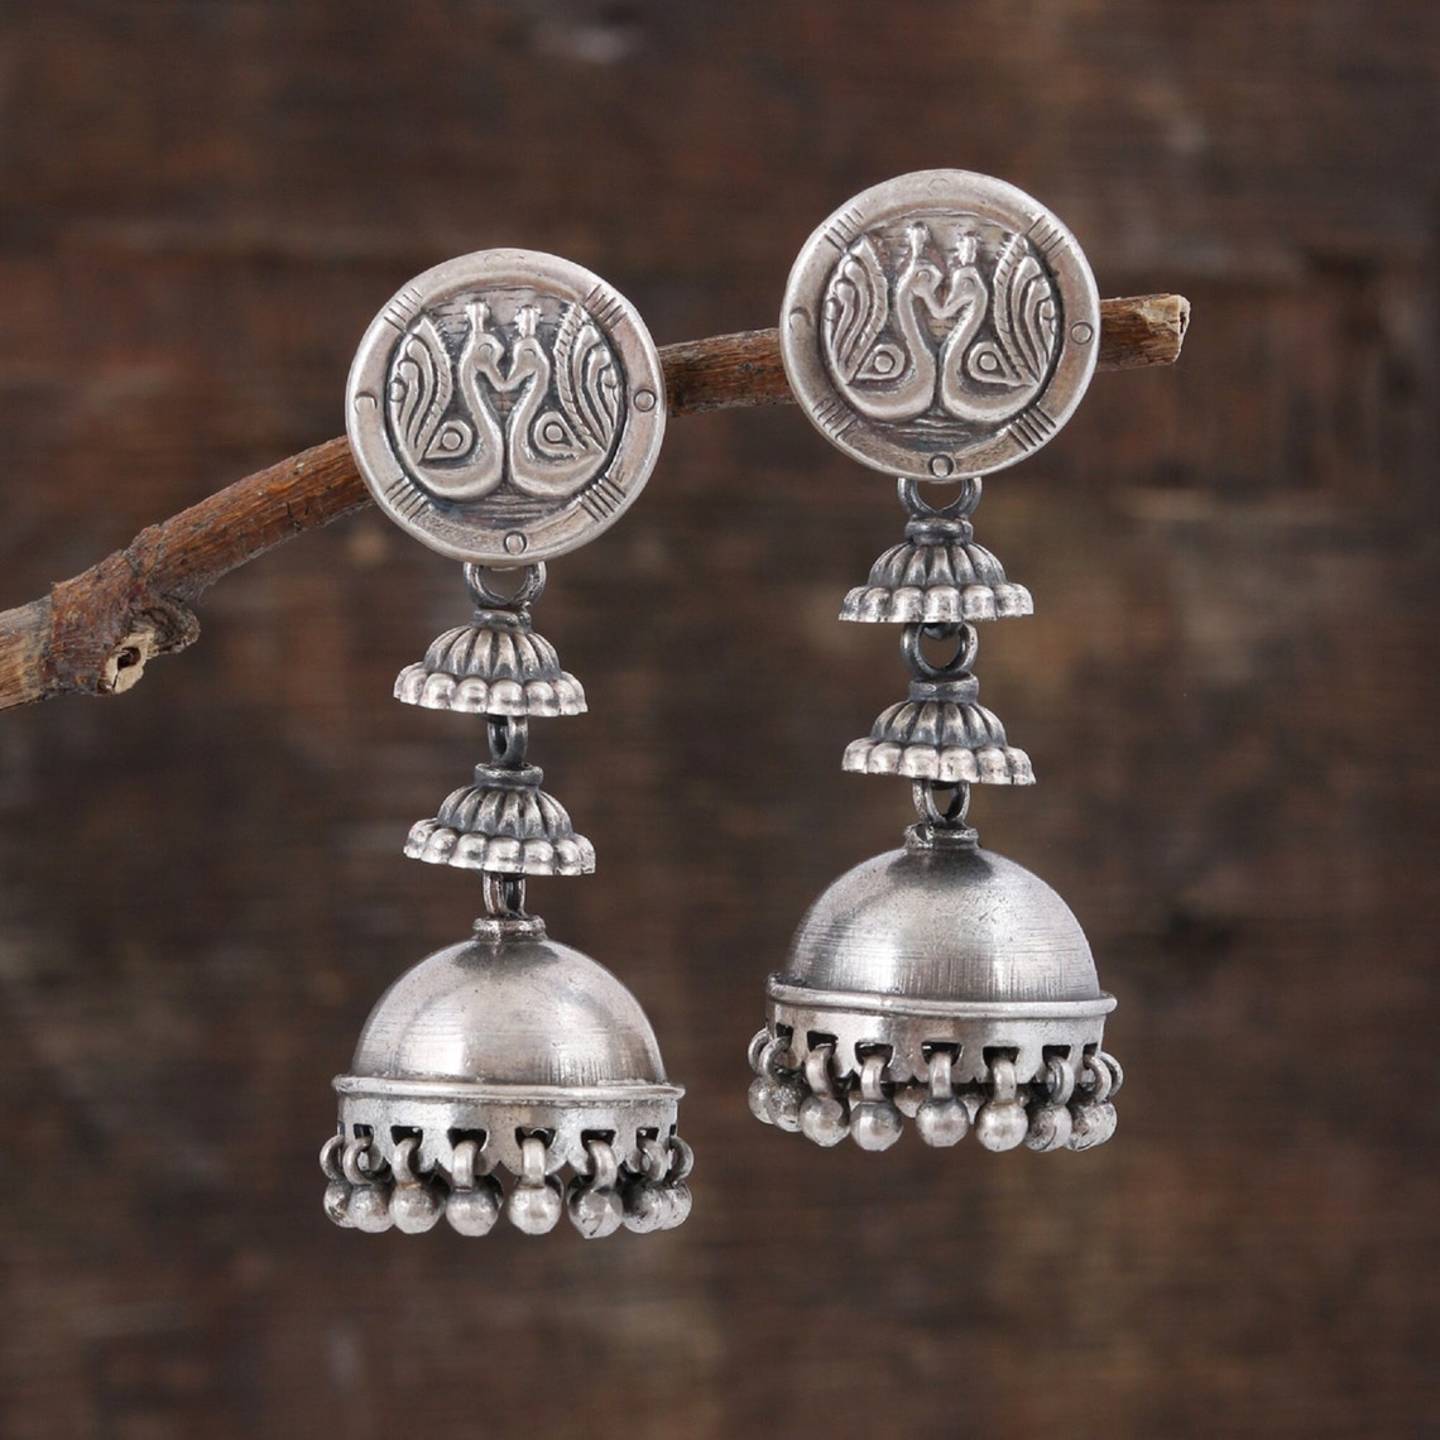 Silver Earring - 925 Sterling Silver Earring - Beautiful Peacock Dangle Earring - Oxidize Antique Look Long Earring - Party wear Earring